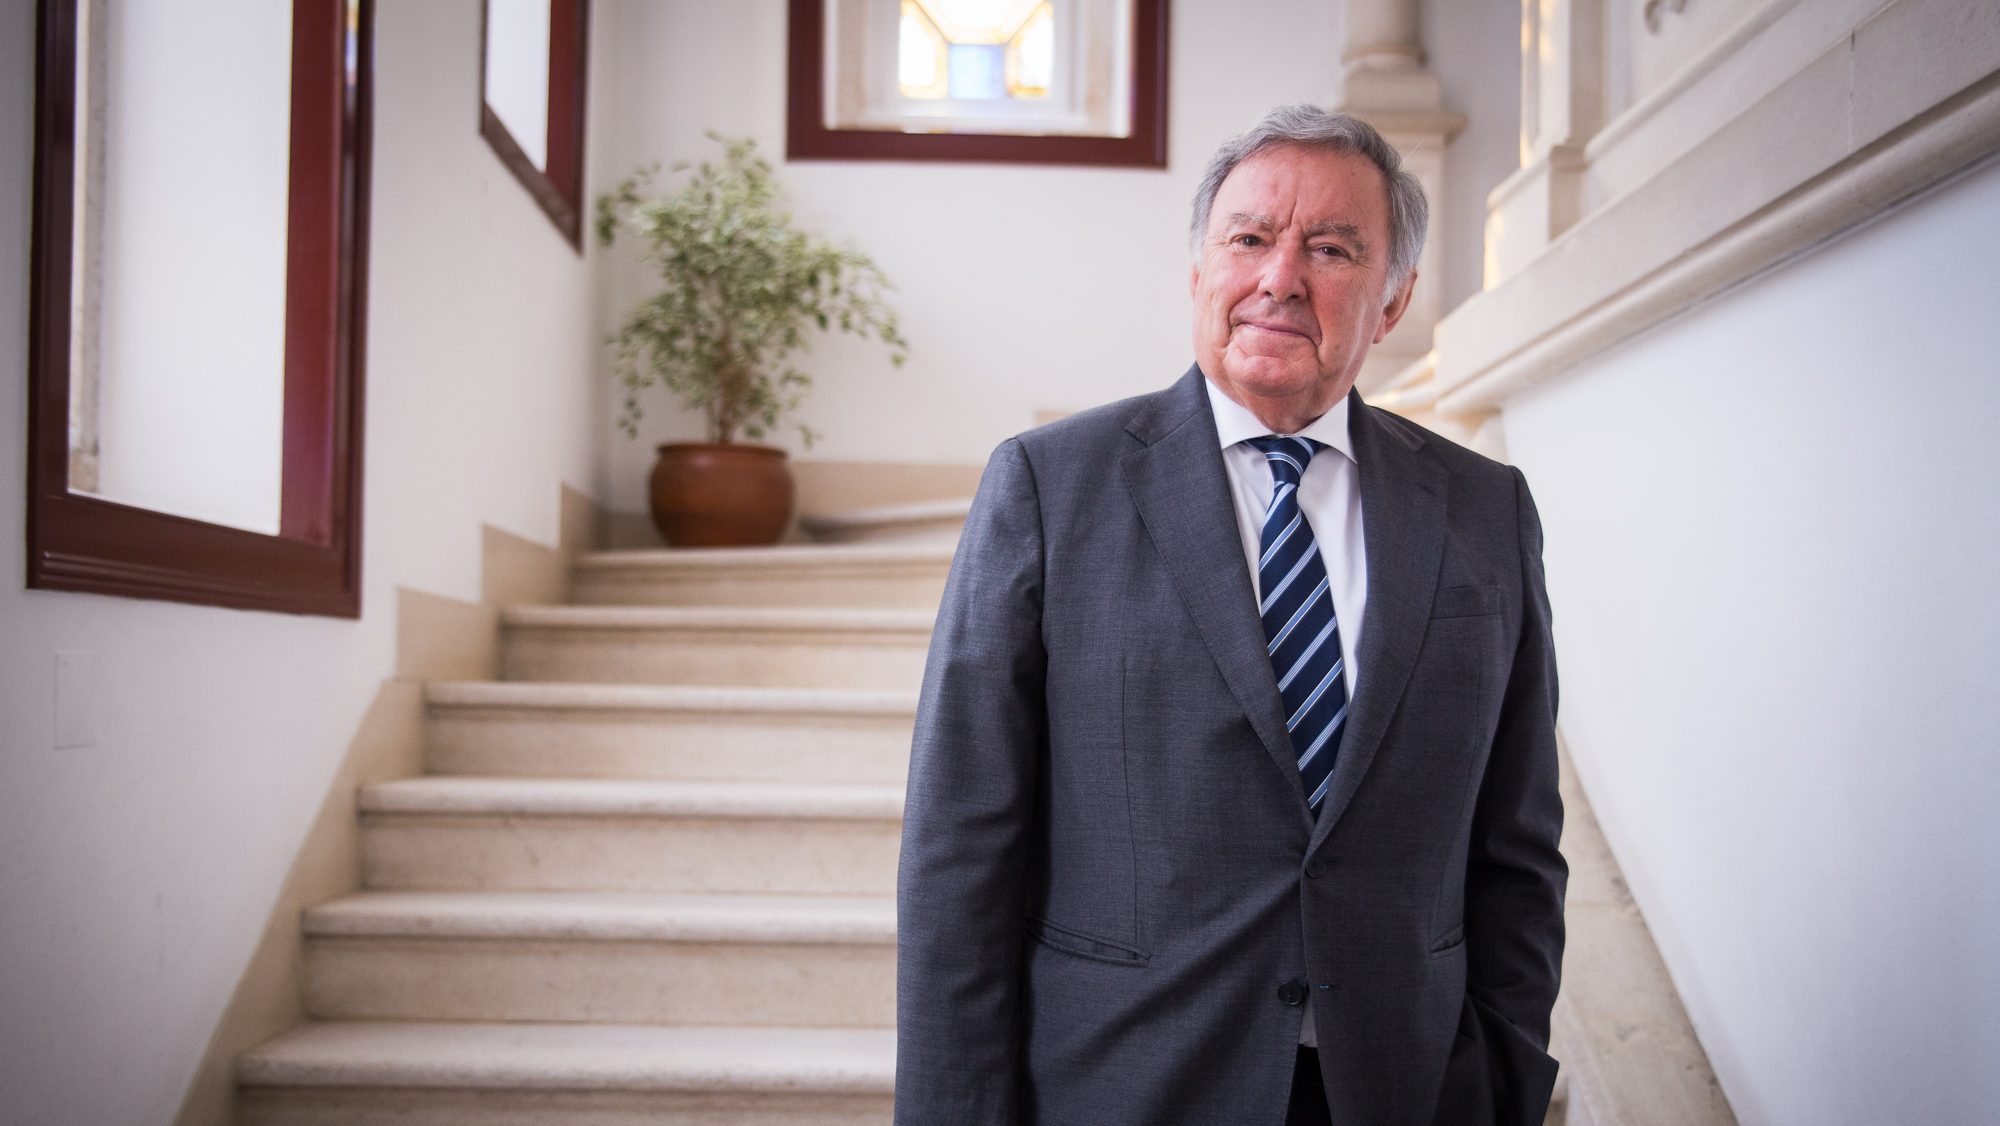 Basílio Horta tomou posse esta terça-feira, 19 de outubro, como presidente da câmara municipal de Sintra